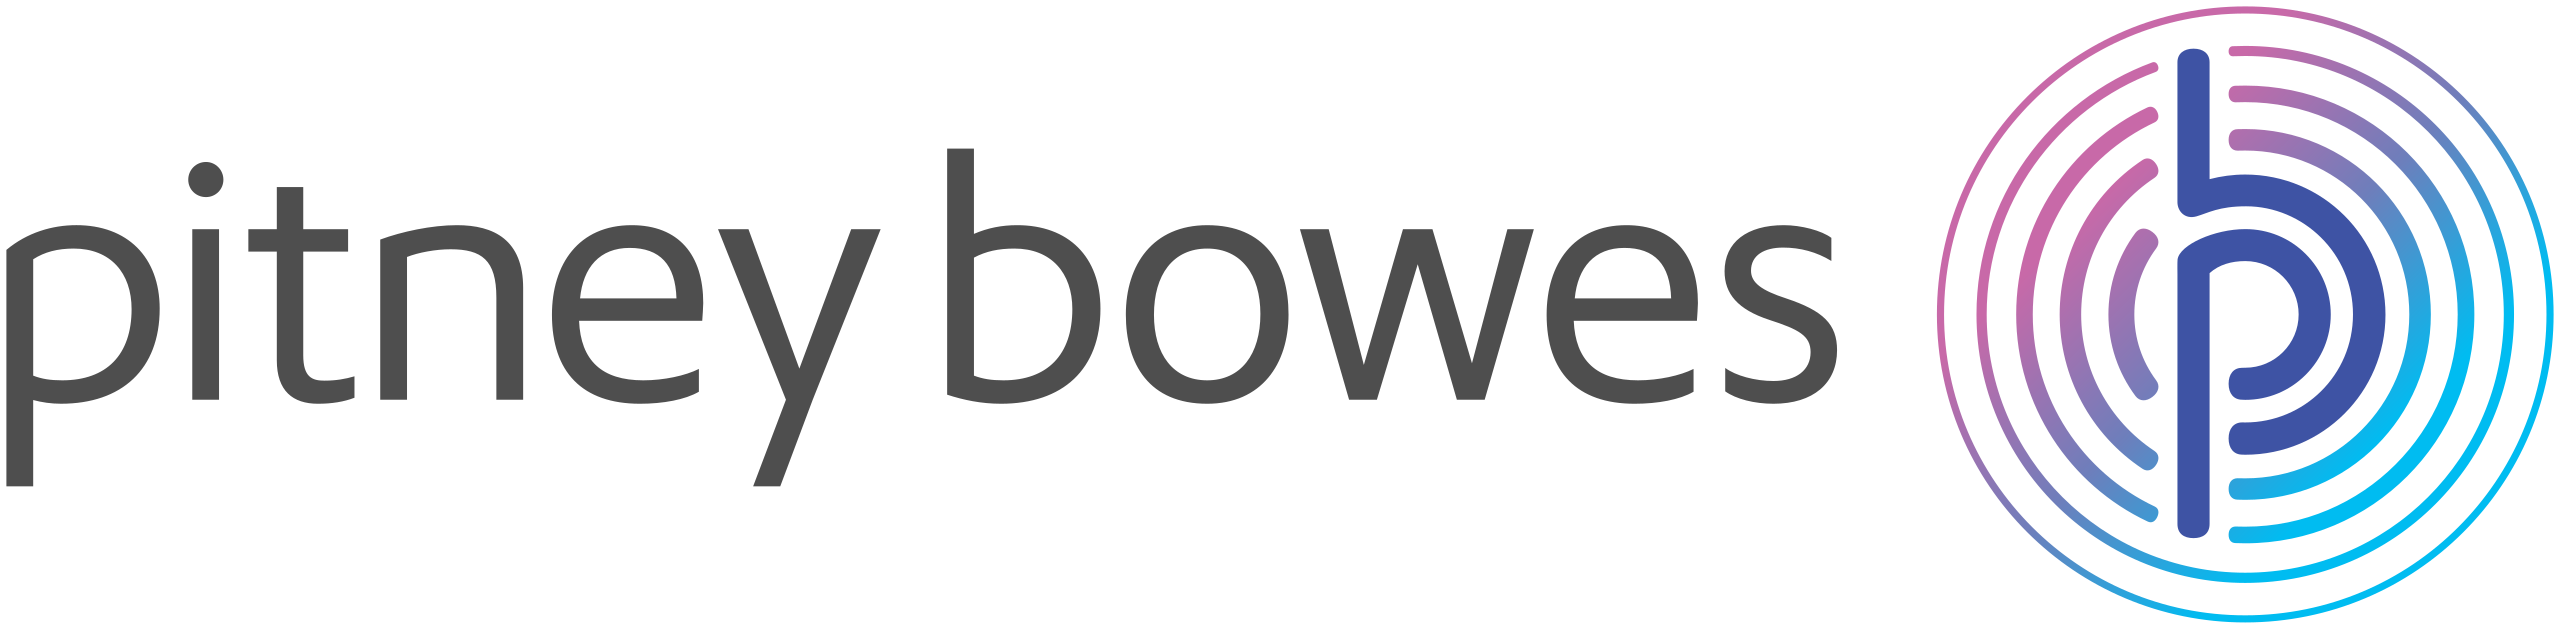 Pitney Bowes_logo